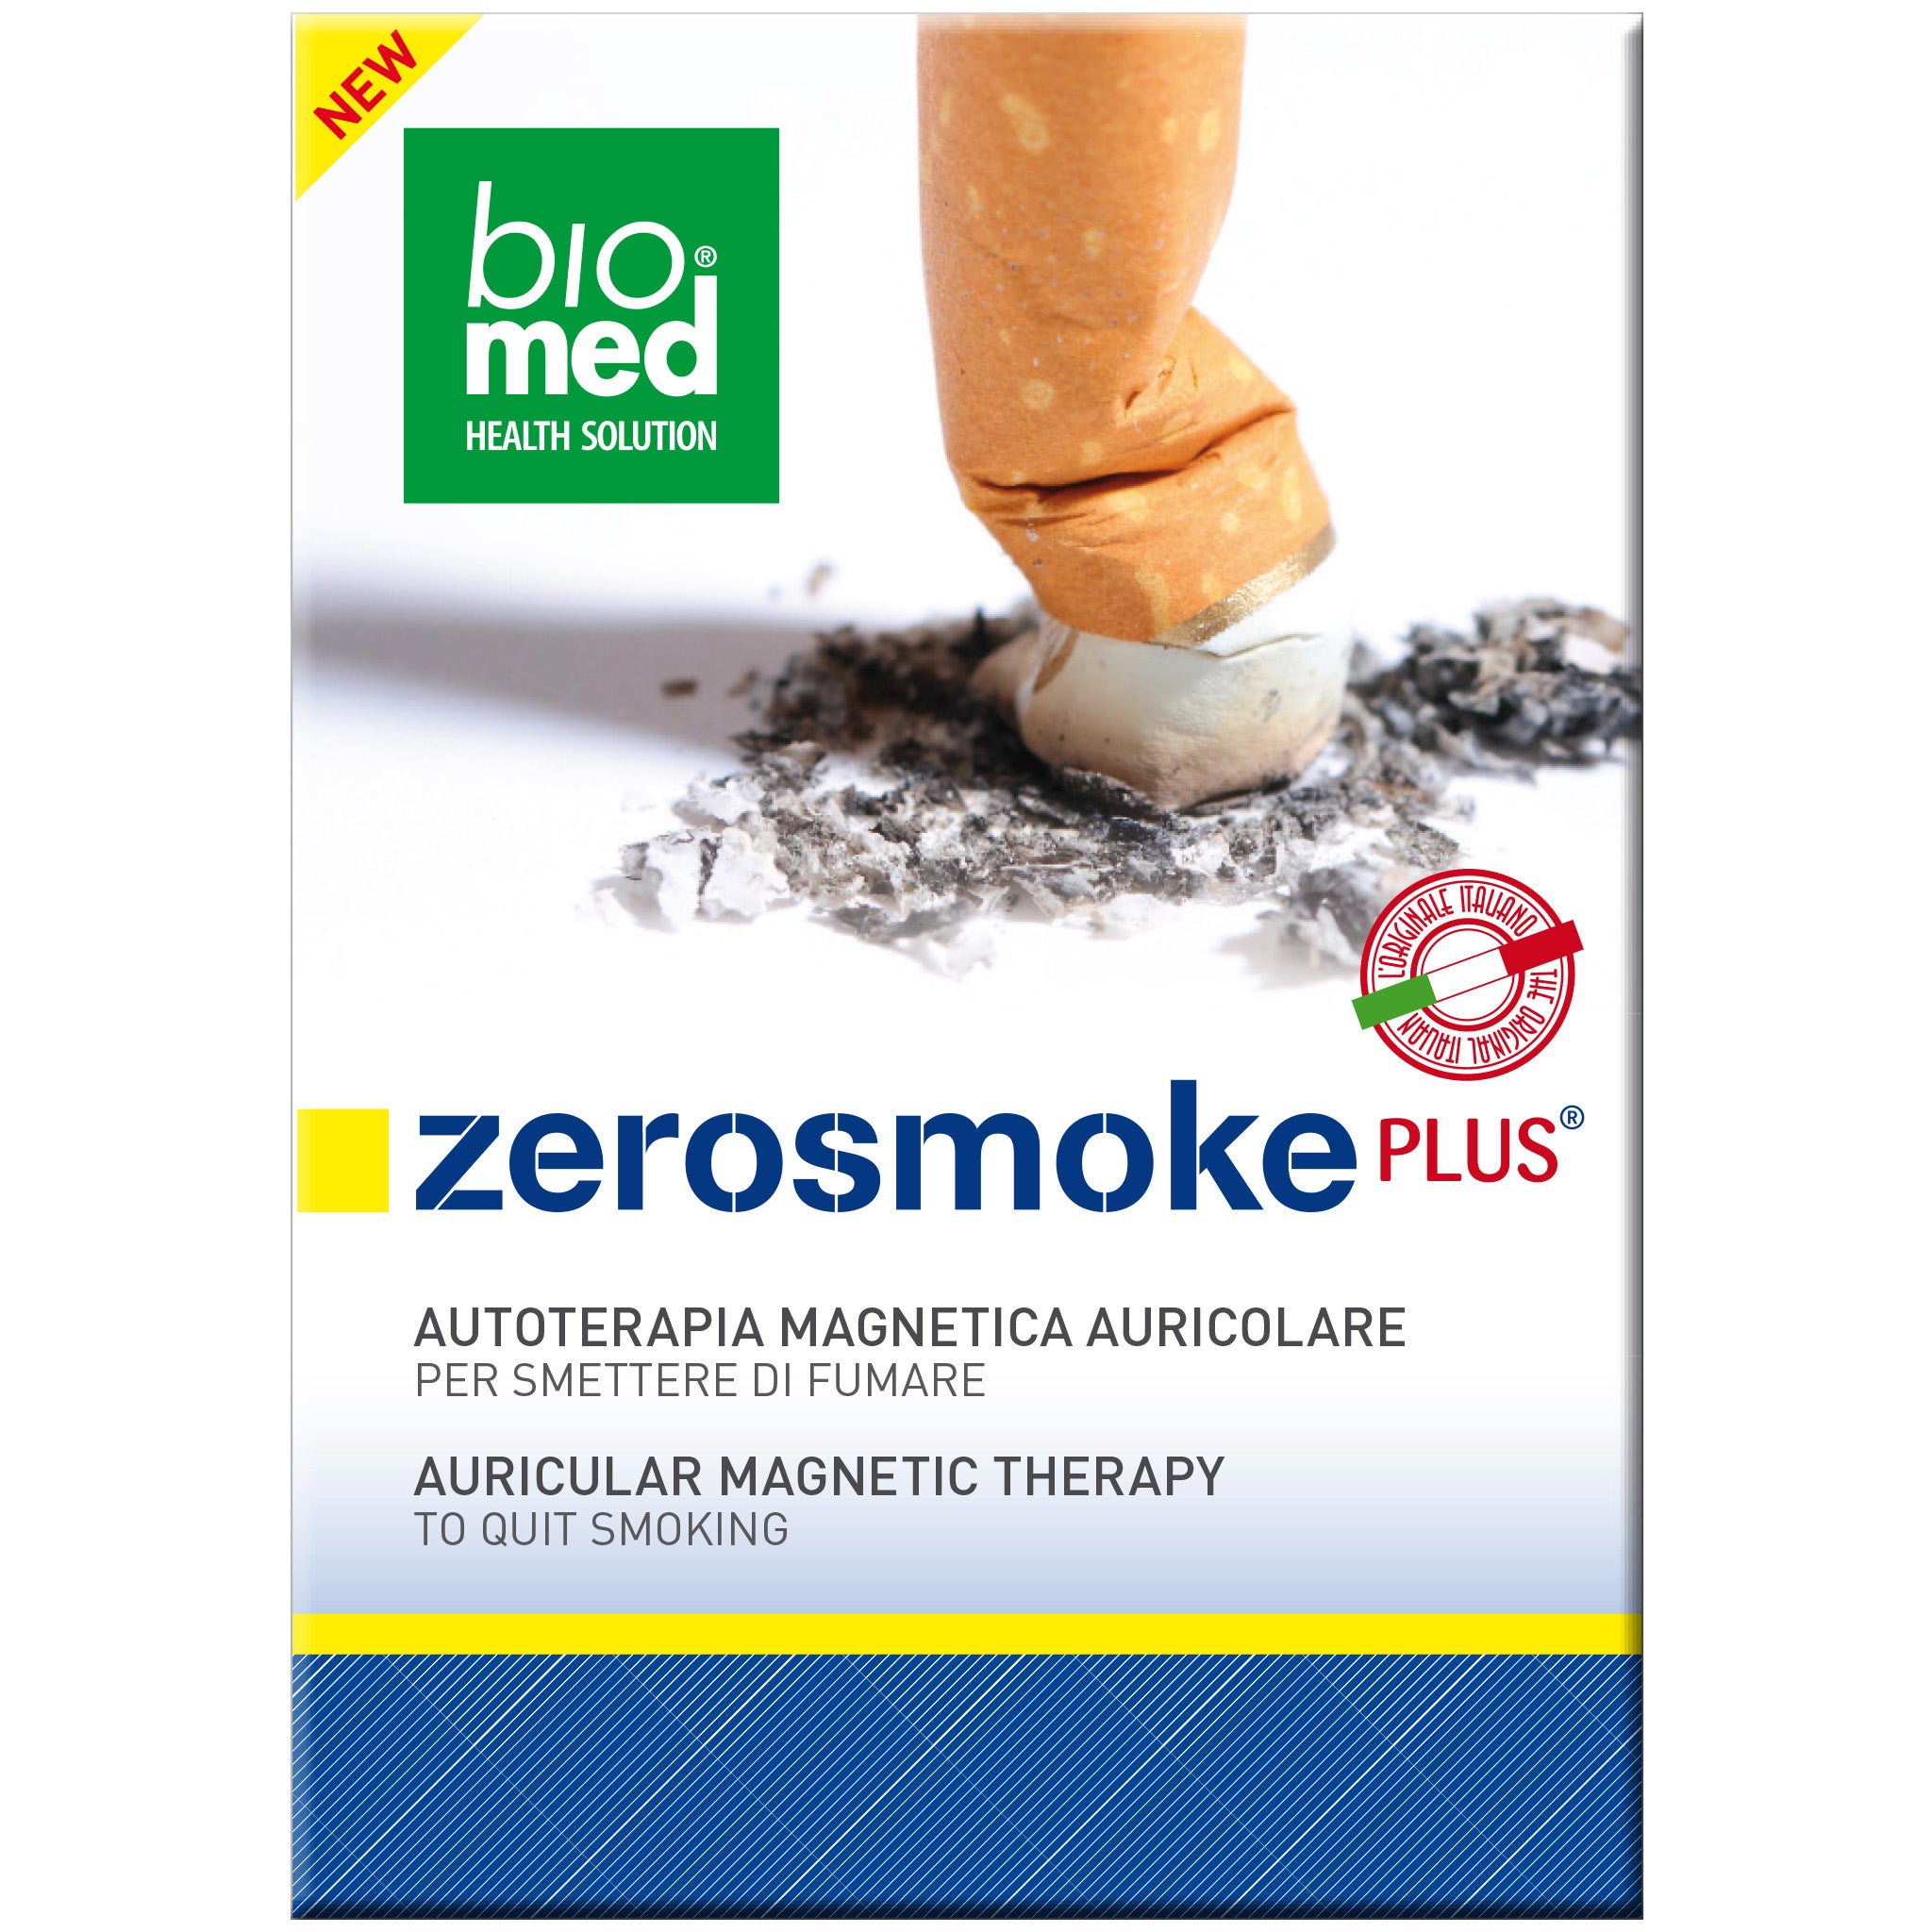 zerosmoke plus - ti aiuta a smettere di fumare - biomed auricoloterapia